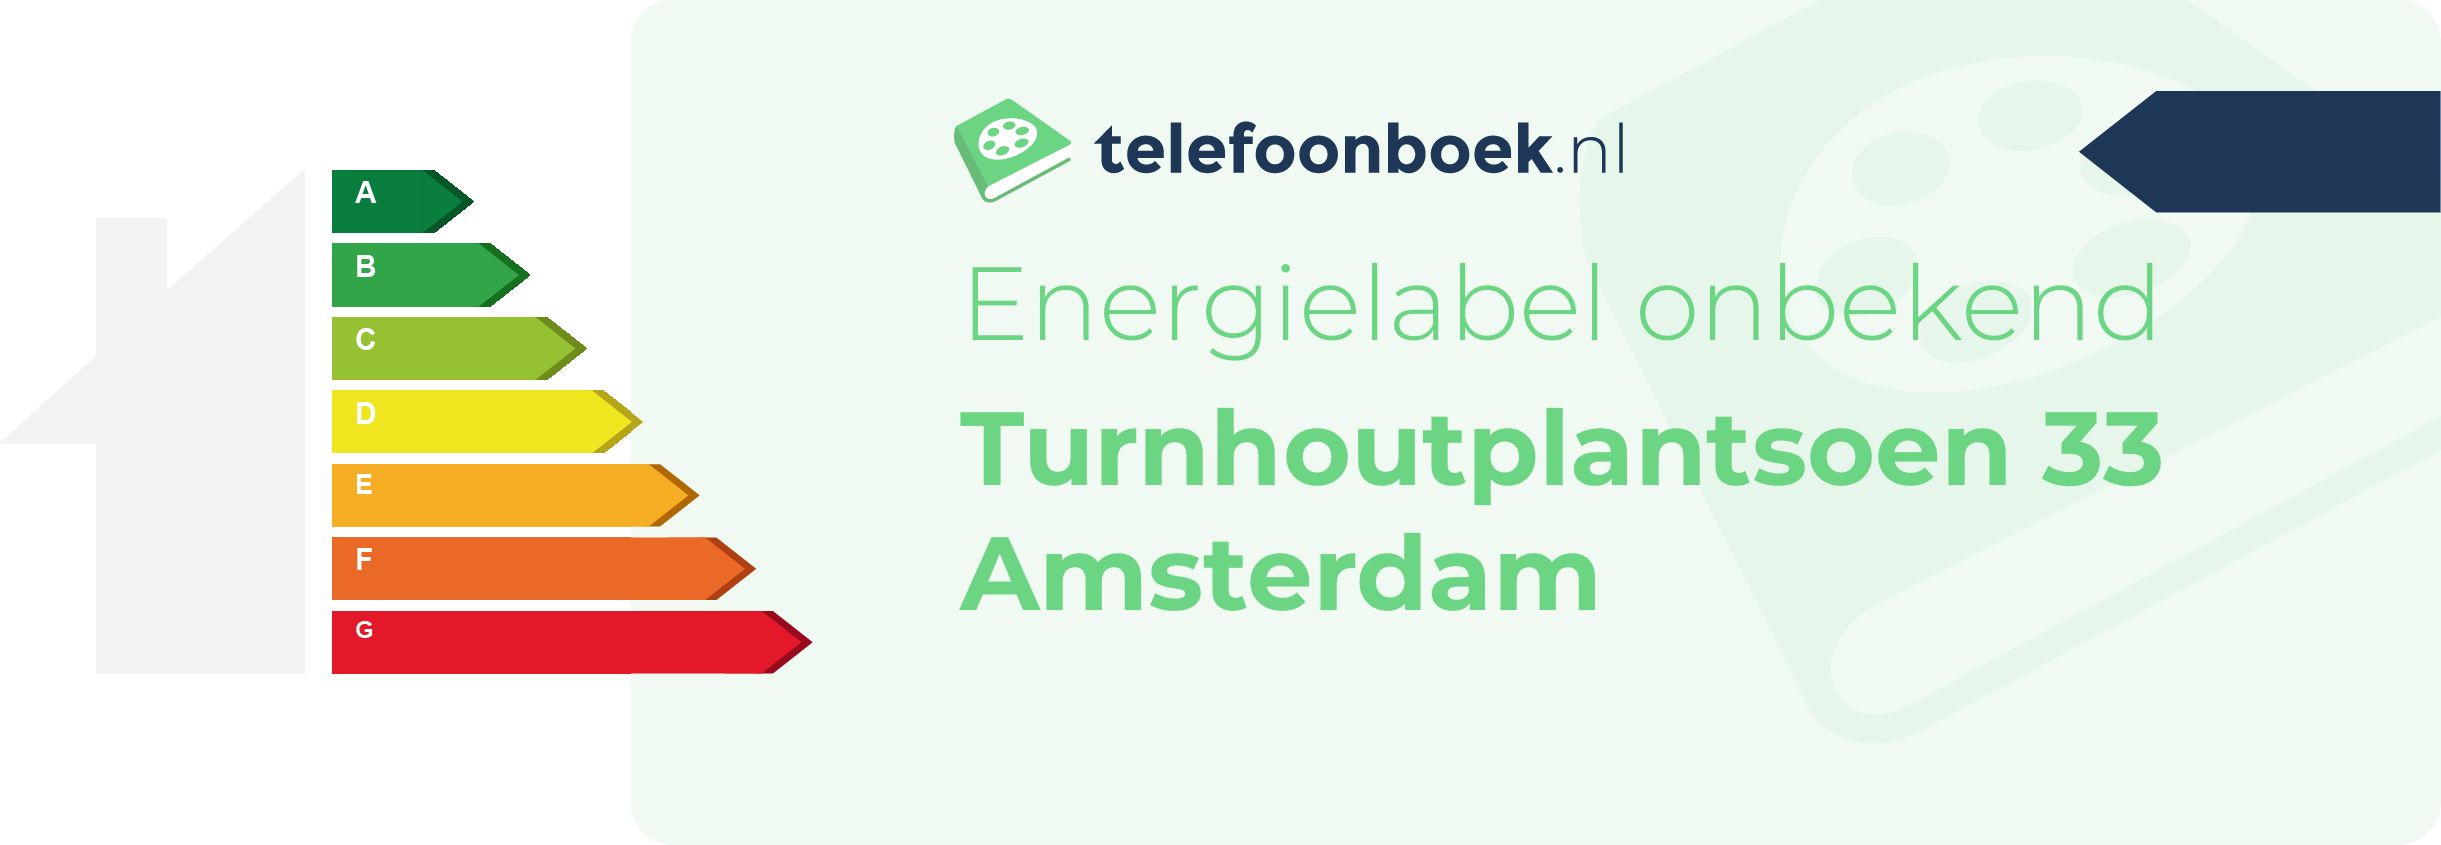 Energielabel Turnhoutplantsoen 33 Amsterdam